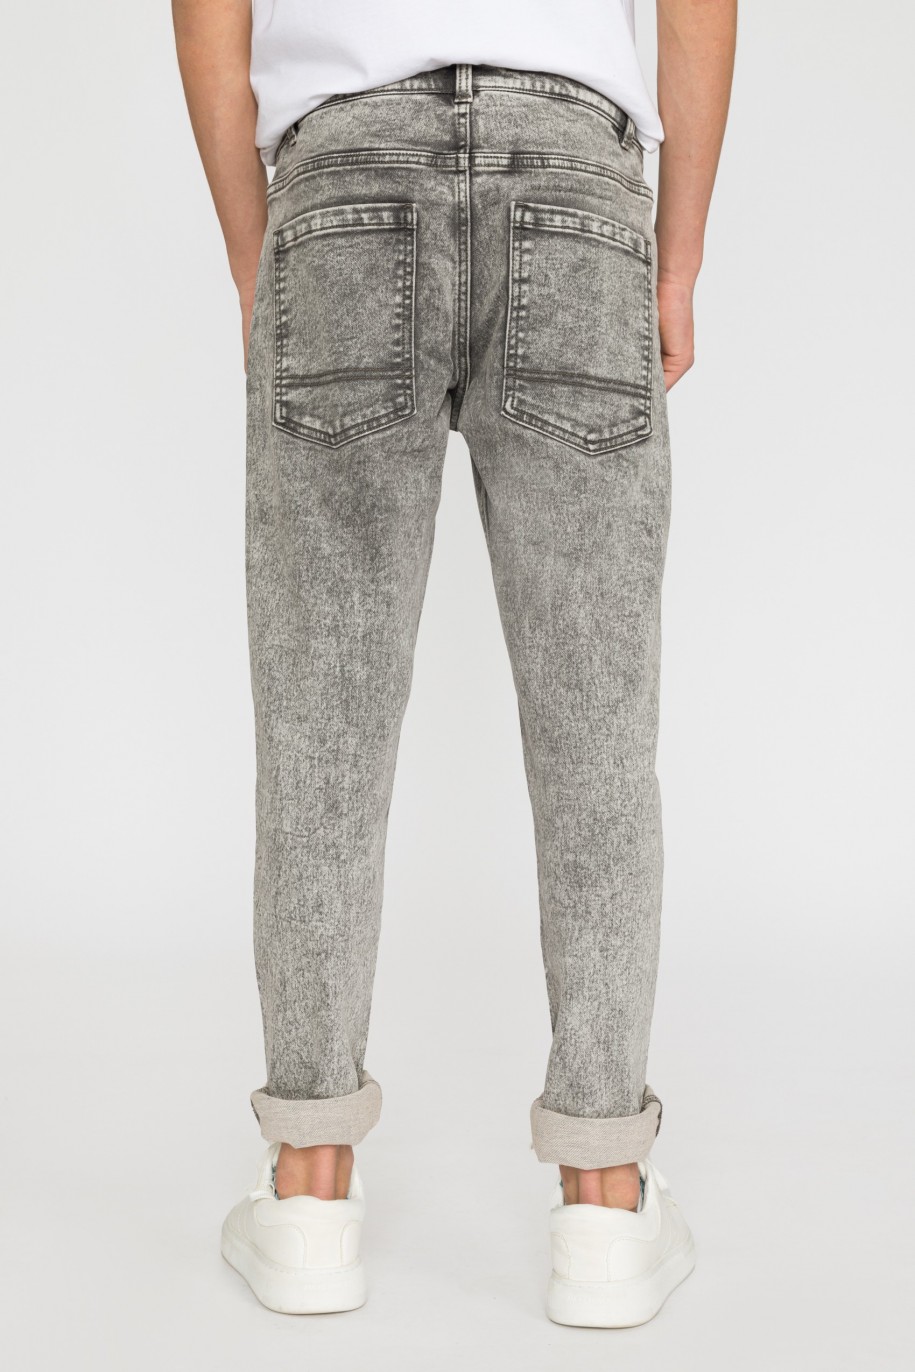 Szare jeansowe spodnie dla chłopaka - 32095